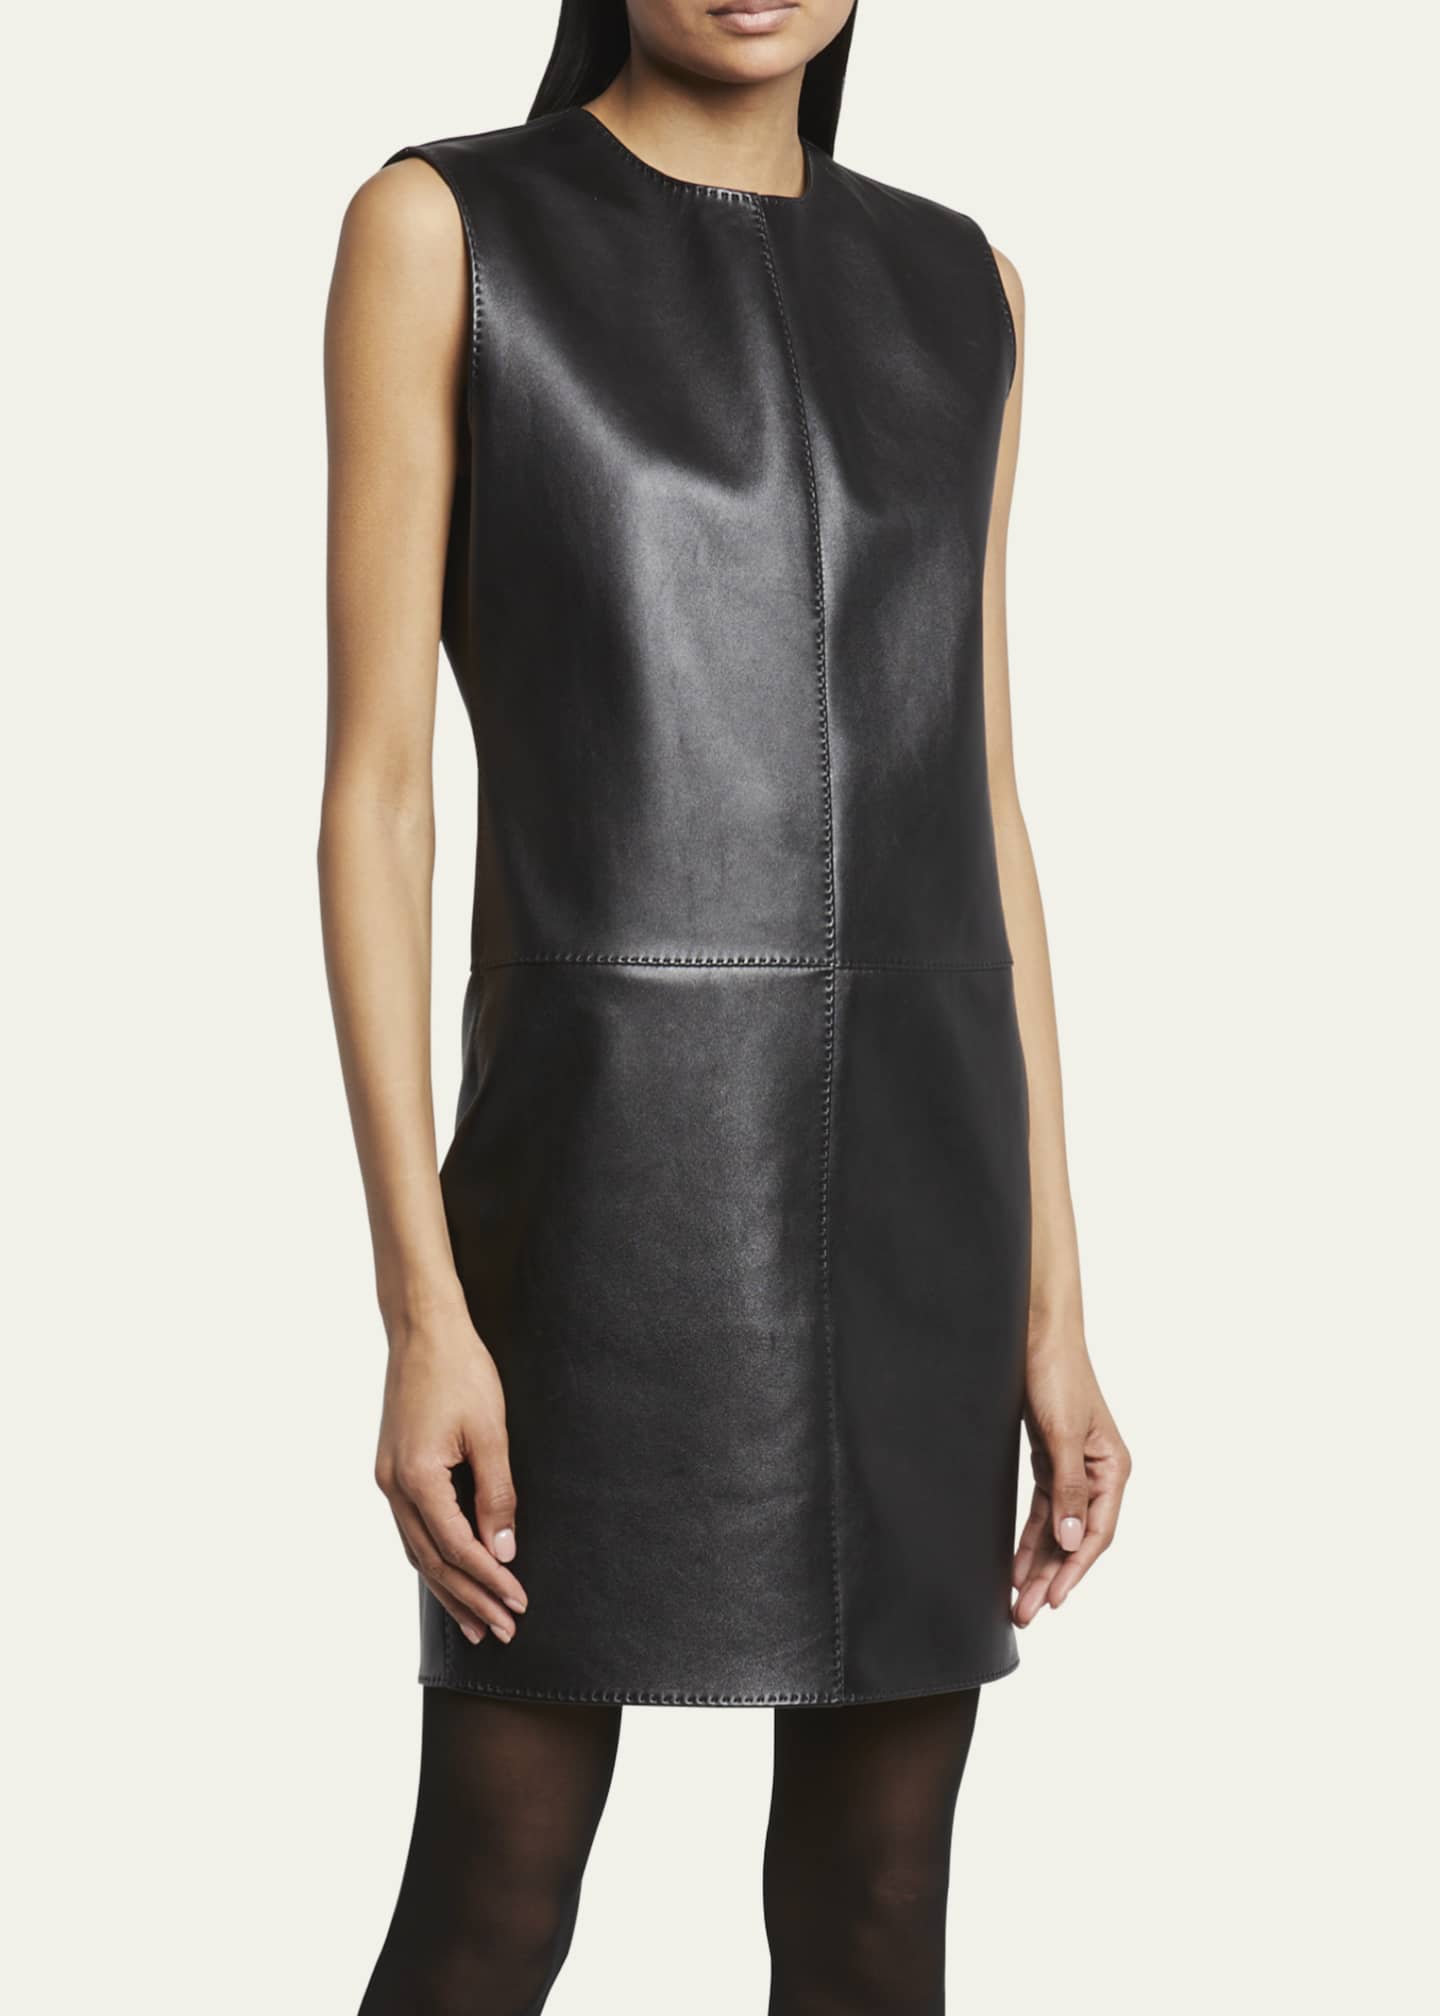 Saint Laurent Leather Shift Mini Dress - Bergdorf Goodman